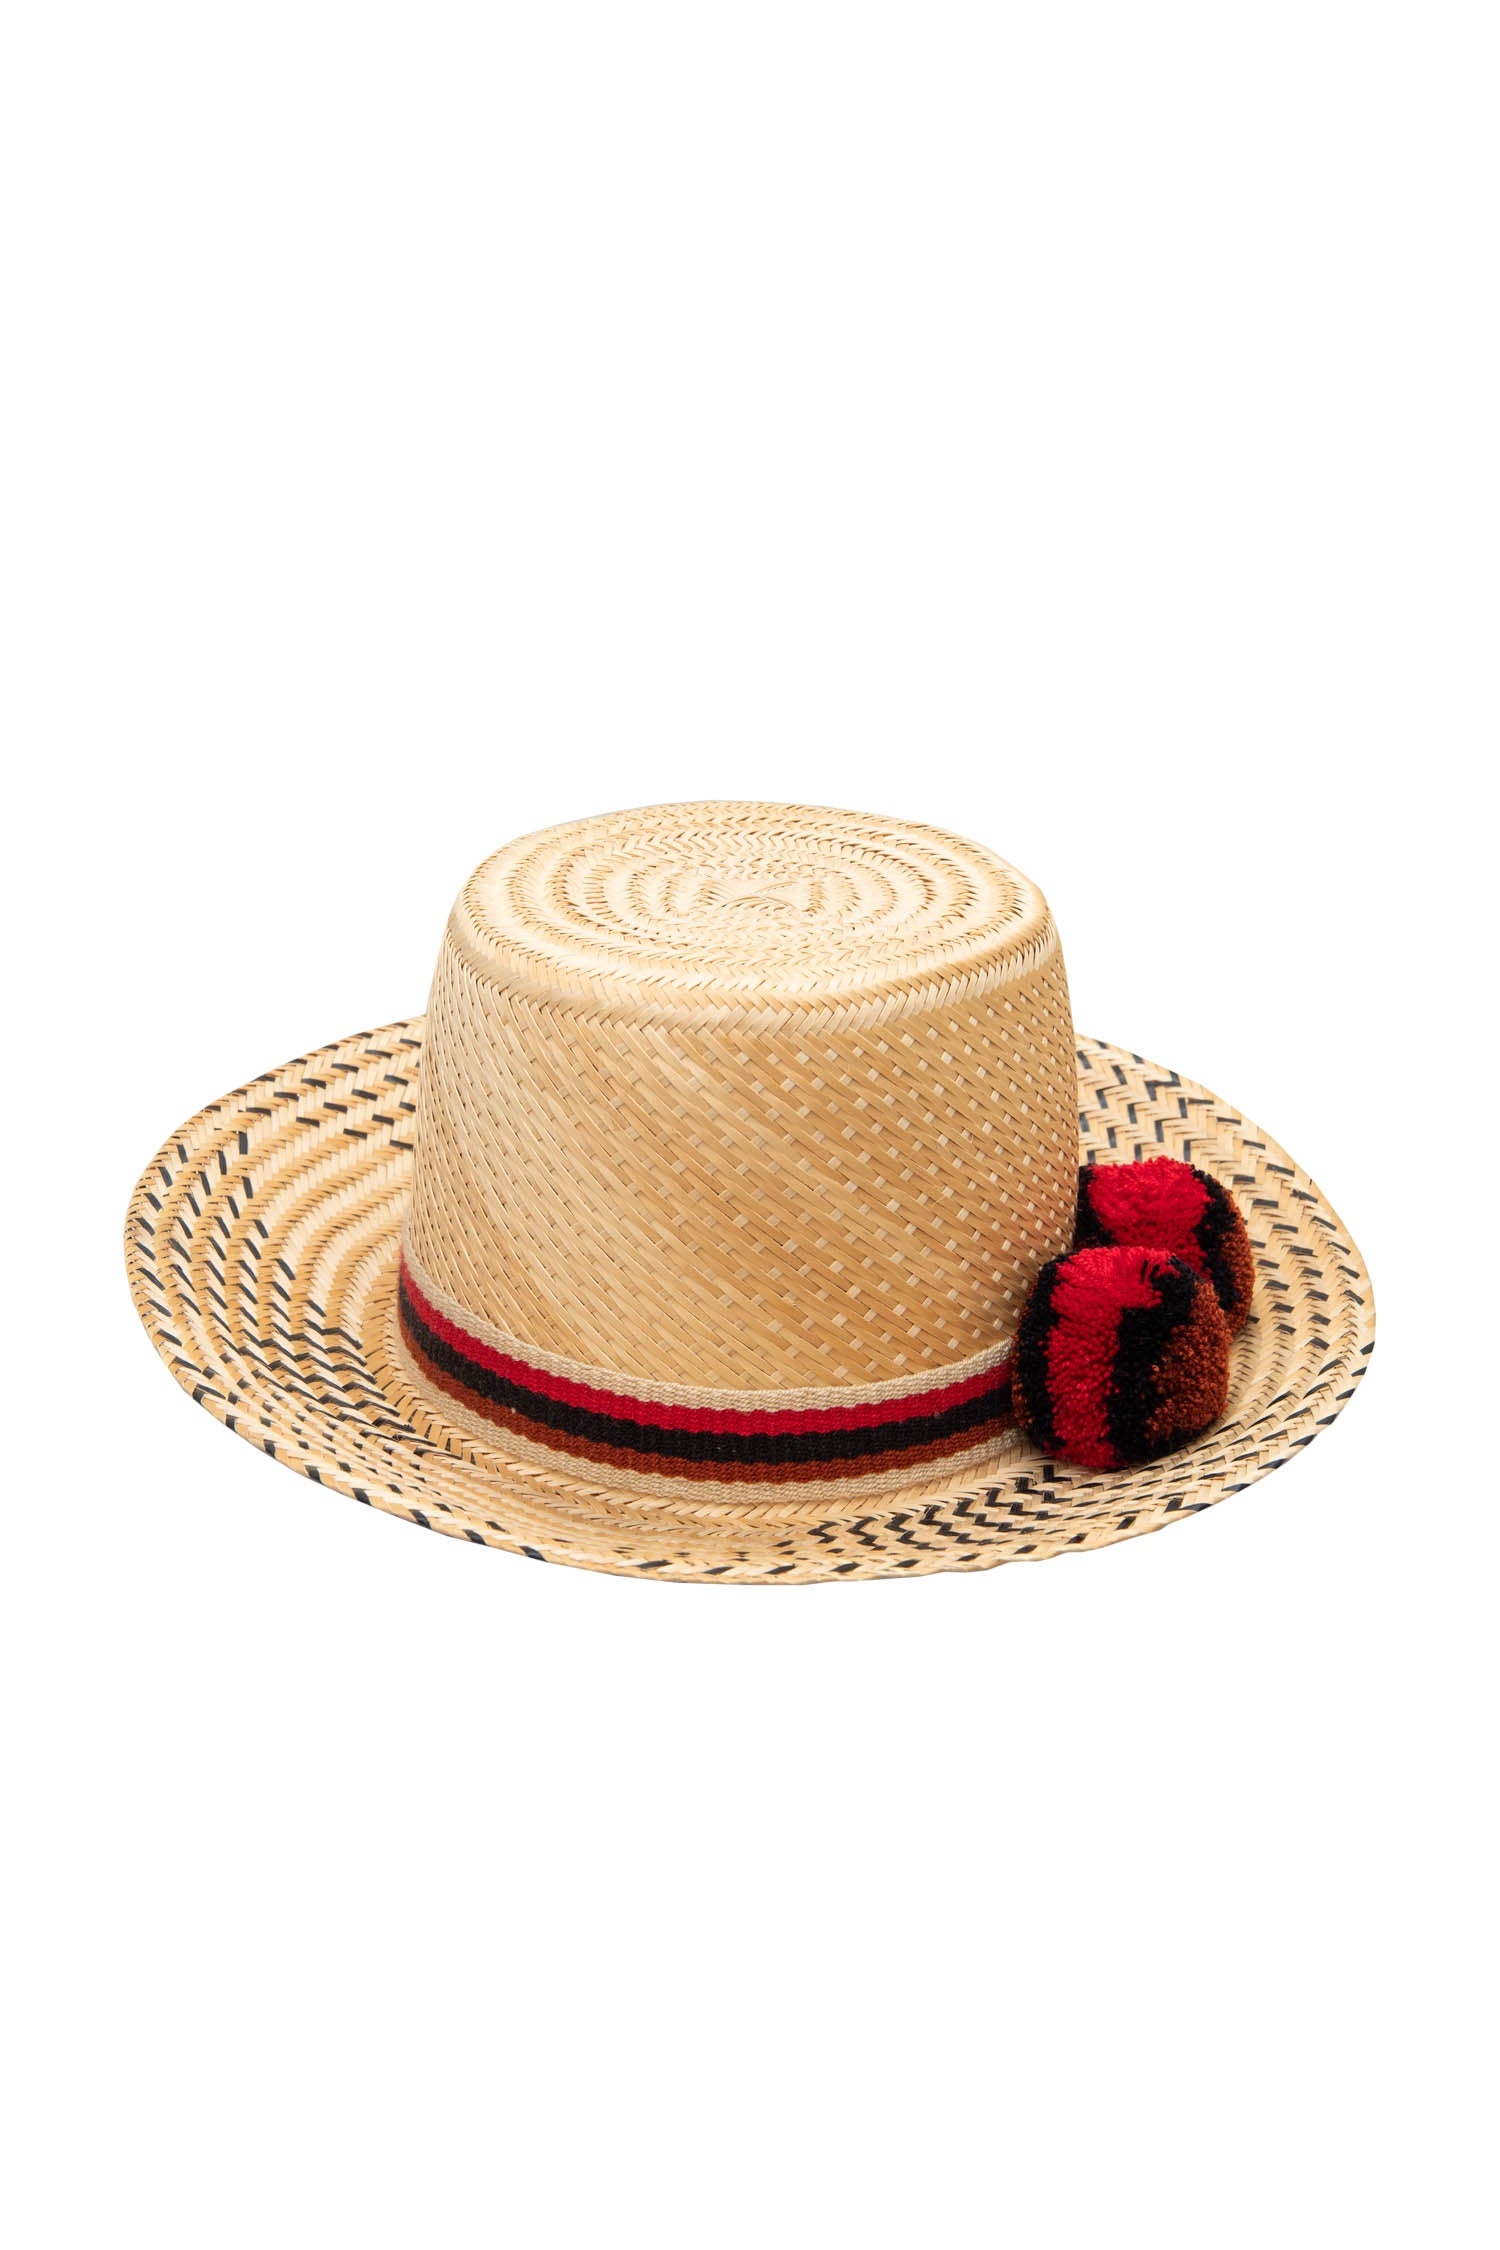 Sirena Straw Hat - Red & Black Pom Poms